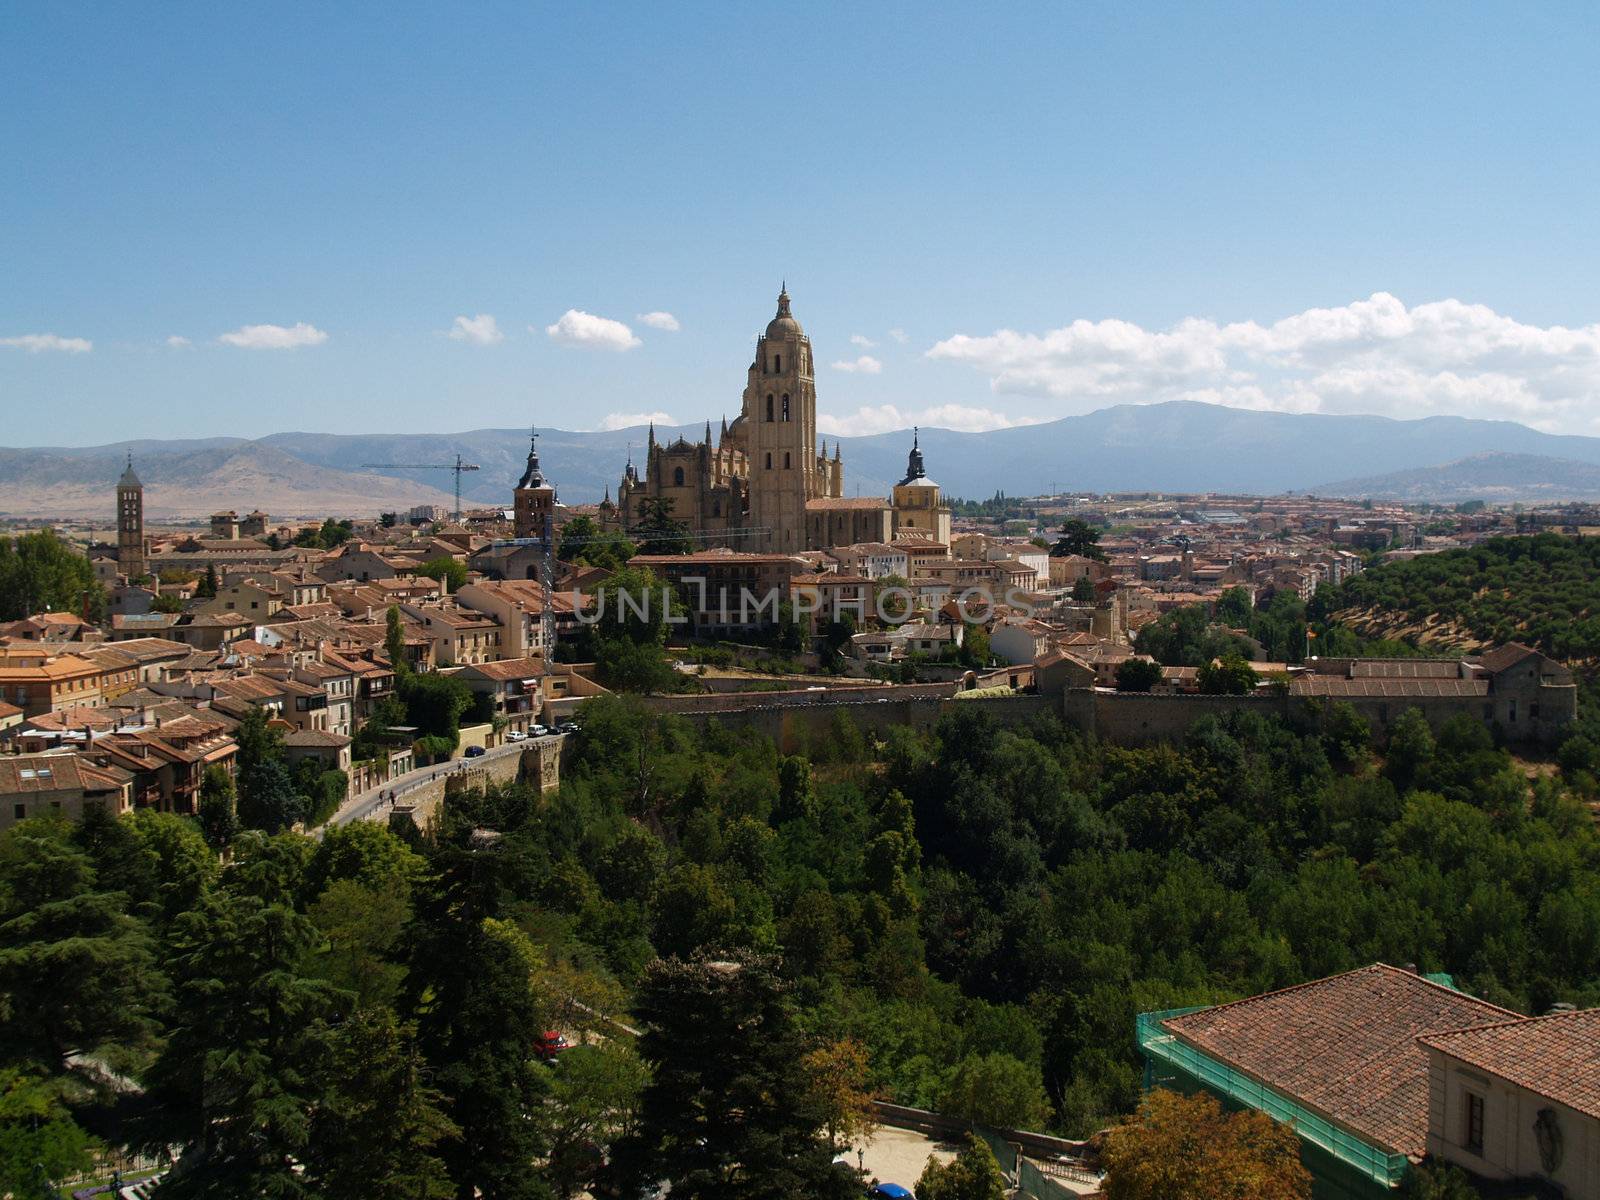 Segovia by douwe